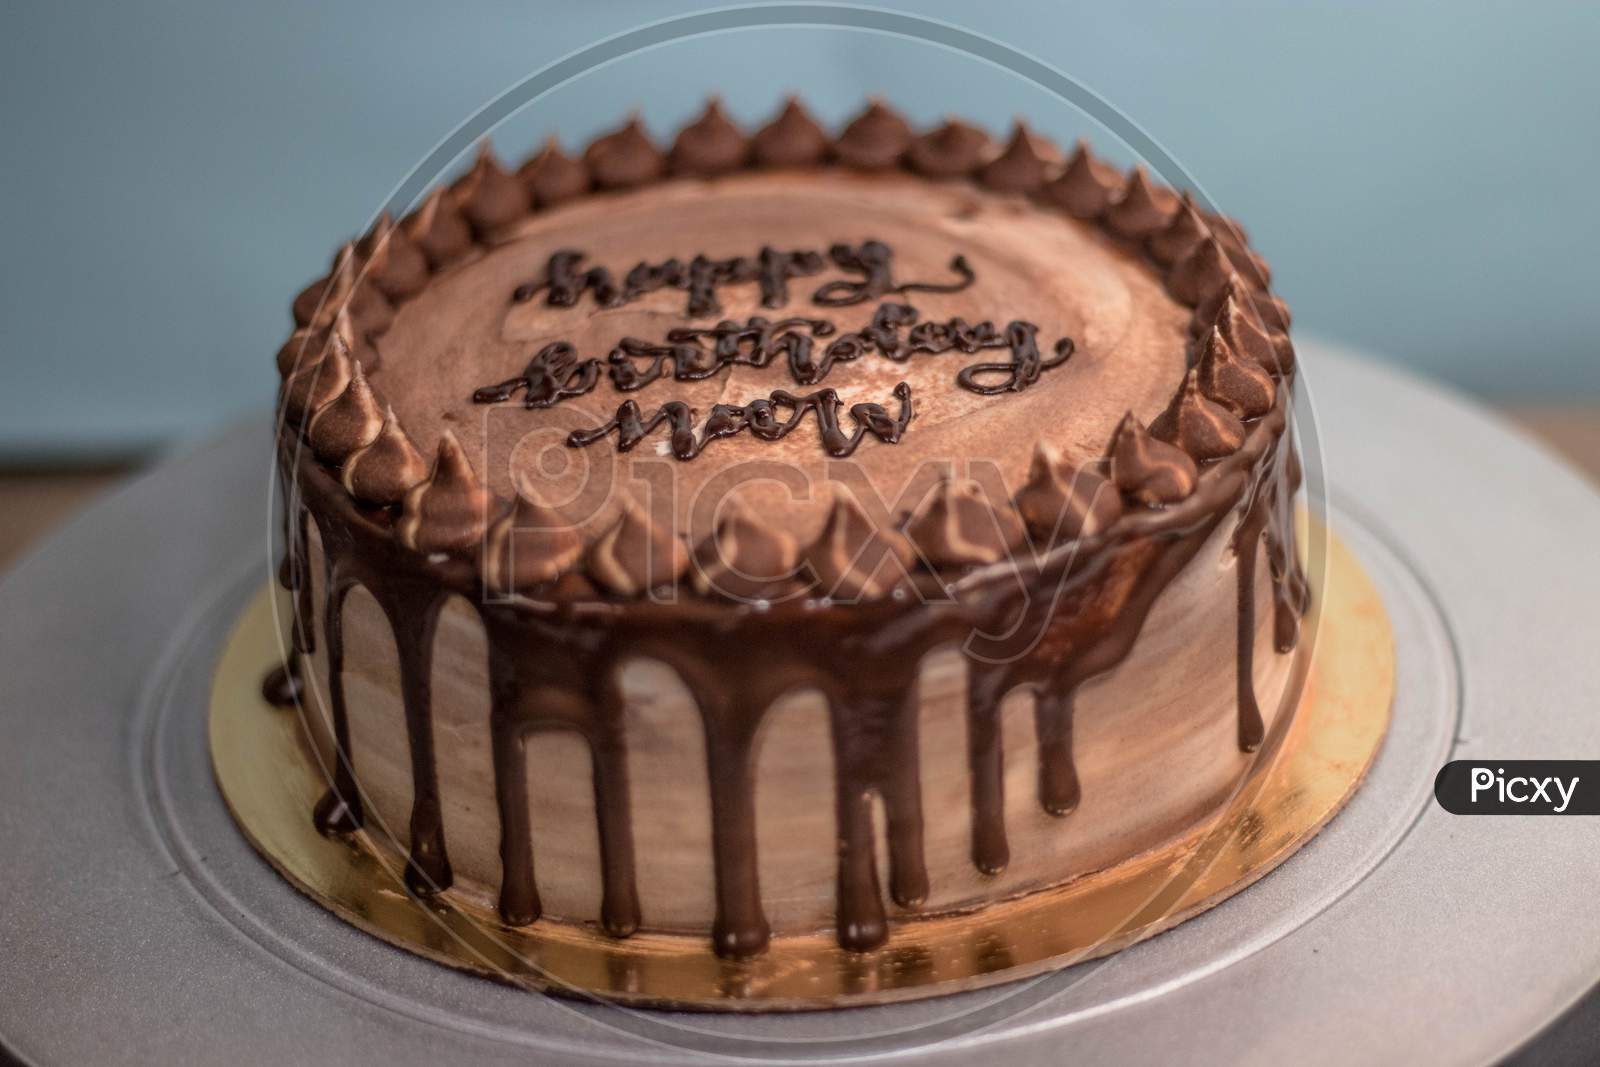 Chocolate sweet truffle birthday cake